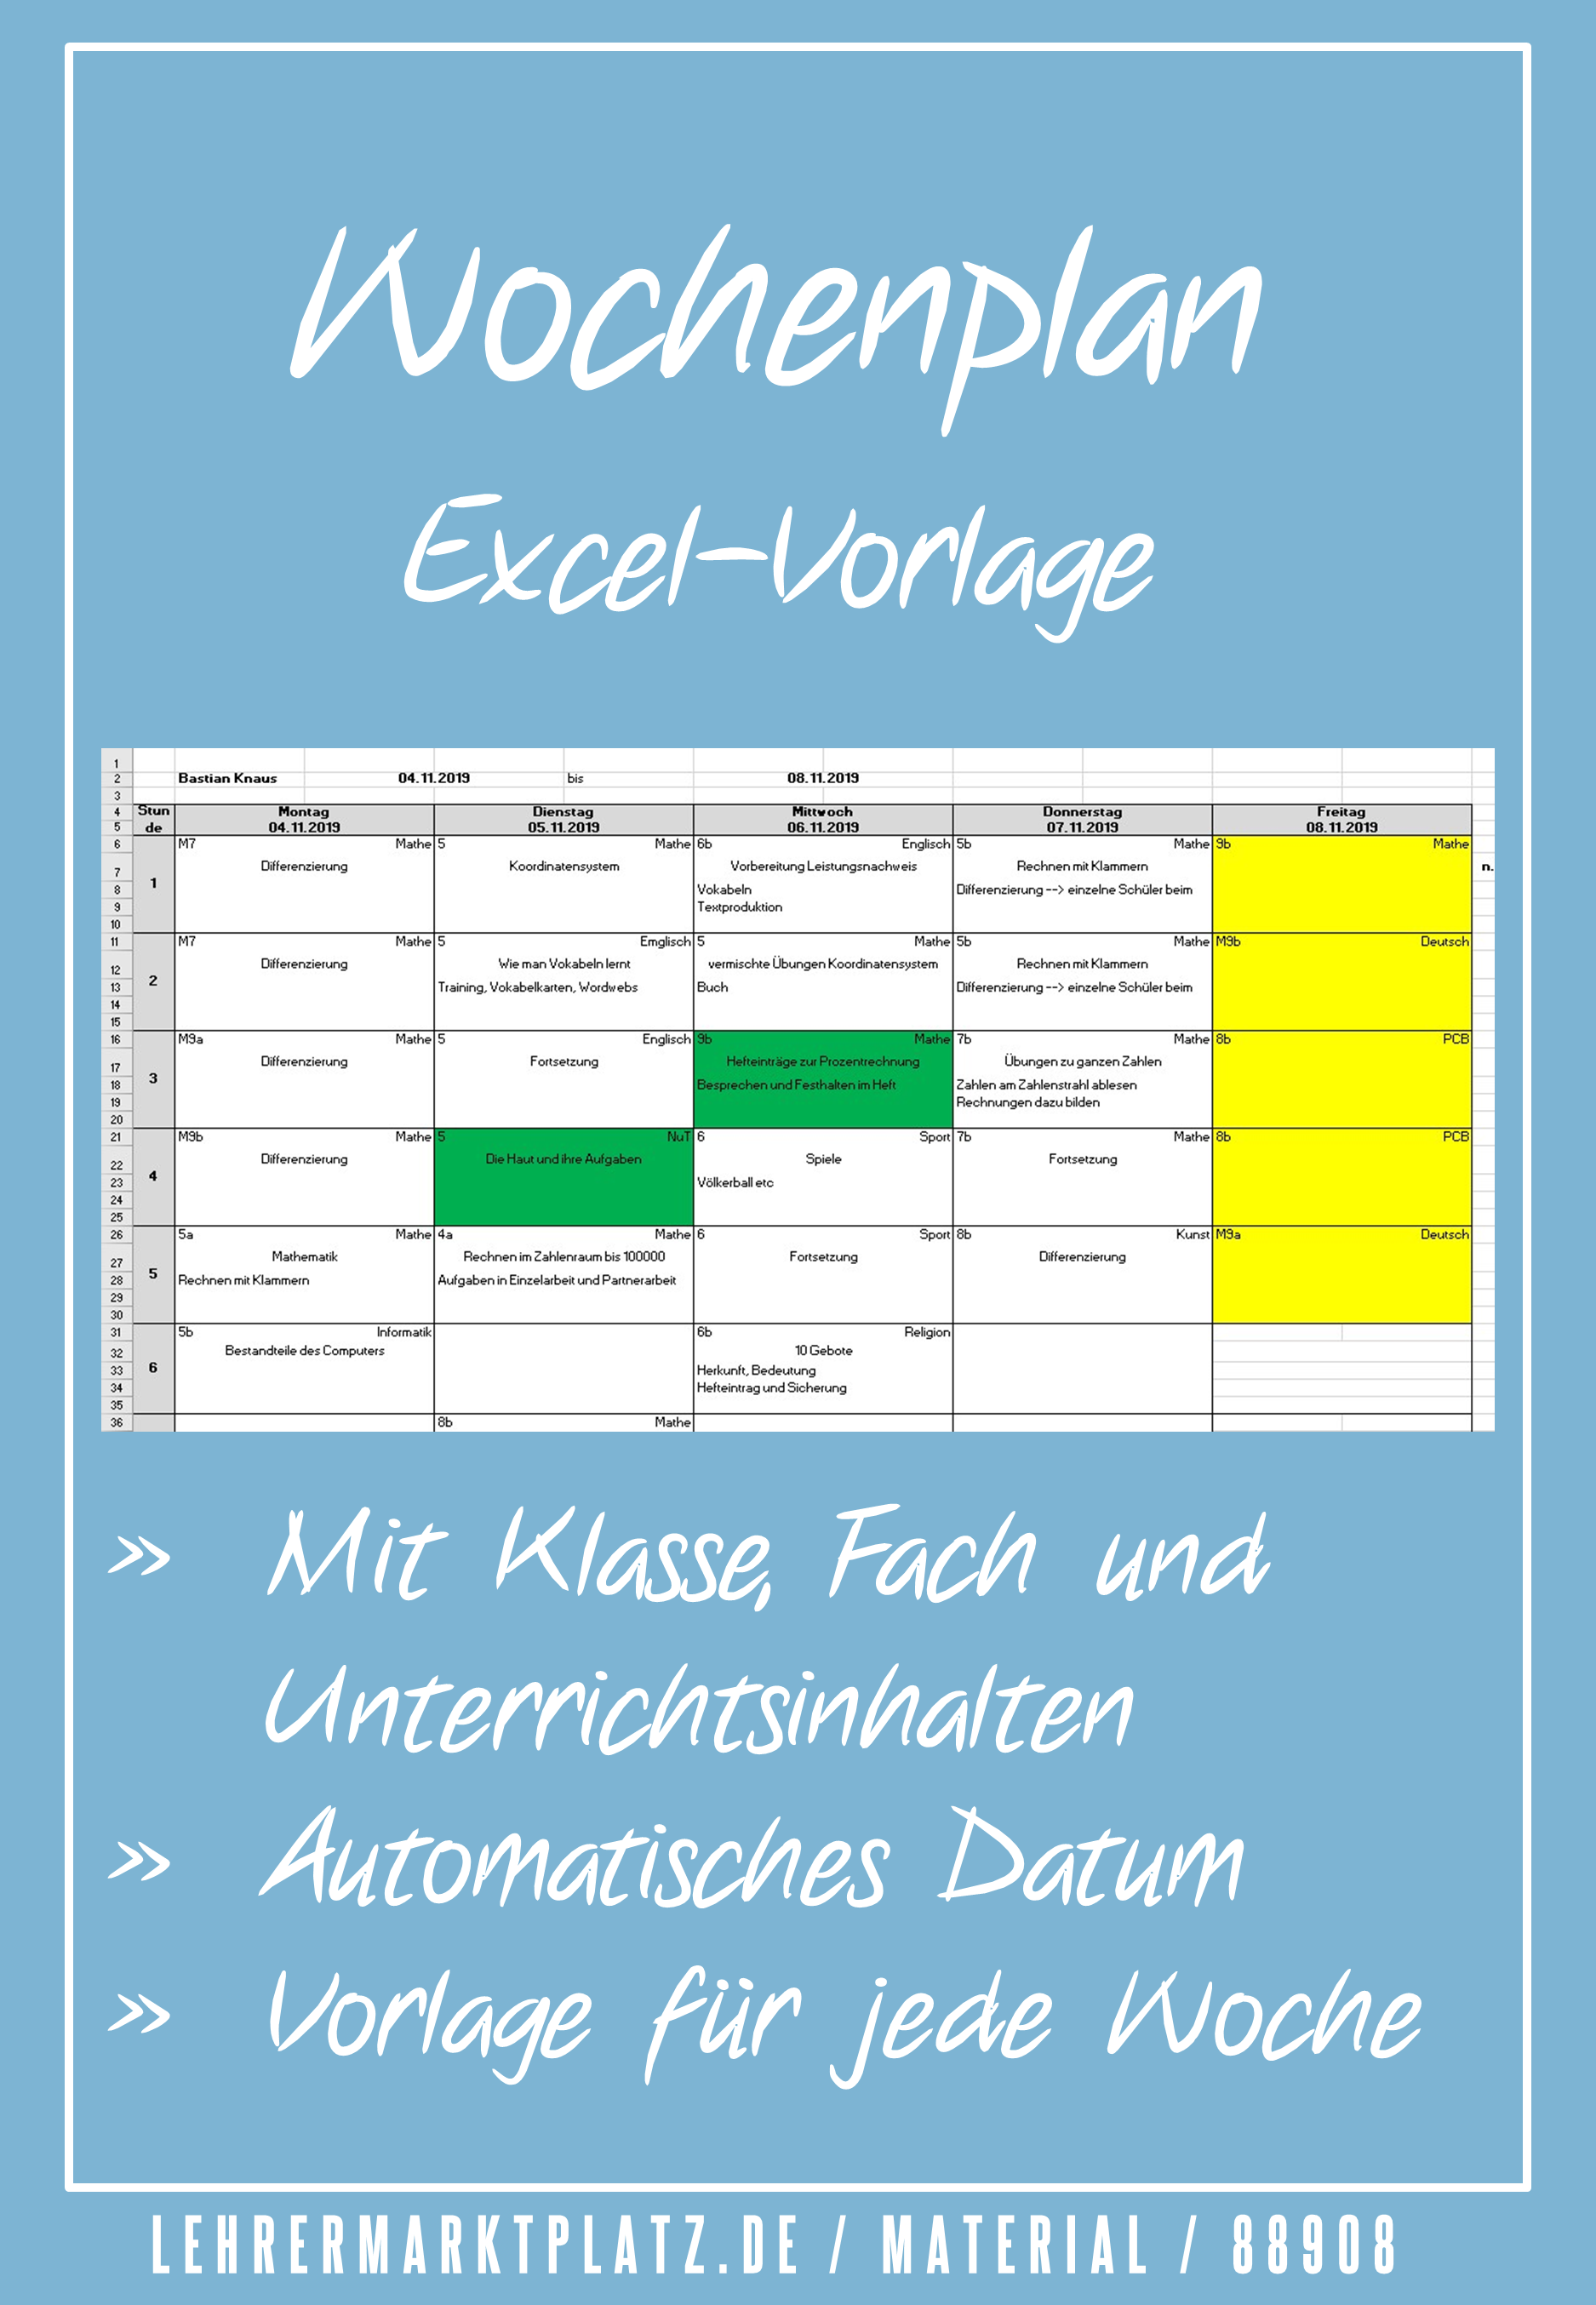 Wochenplan Vorlage In Excel Unterrichtsmaterial Im Fach Fachubergreifendes Unterrichtsplanung Wochenplan Vorlage Unterrichts Planung